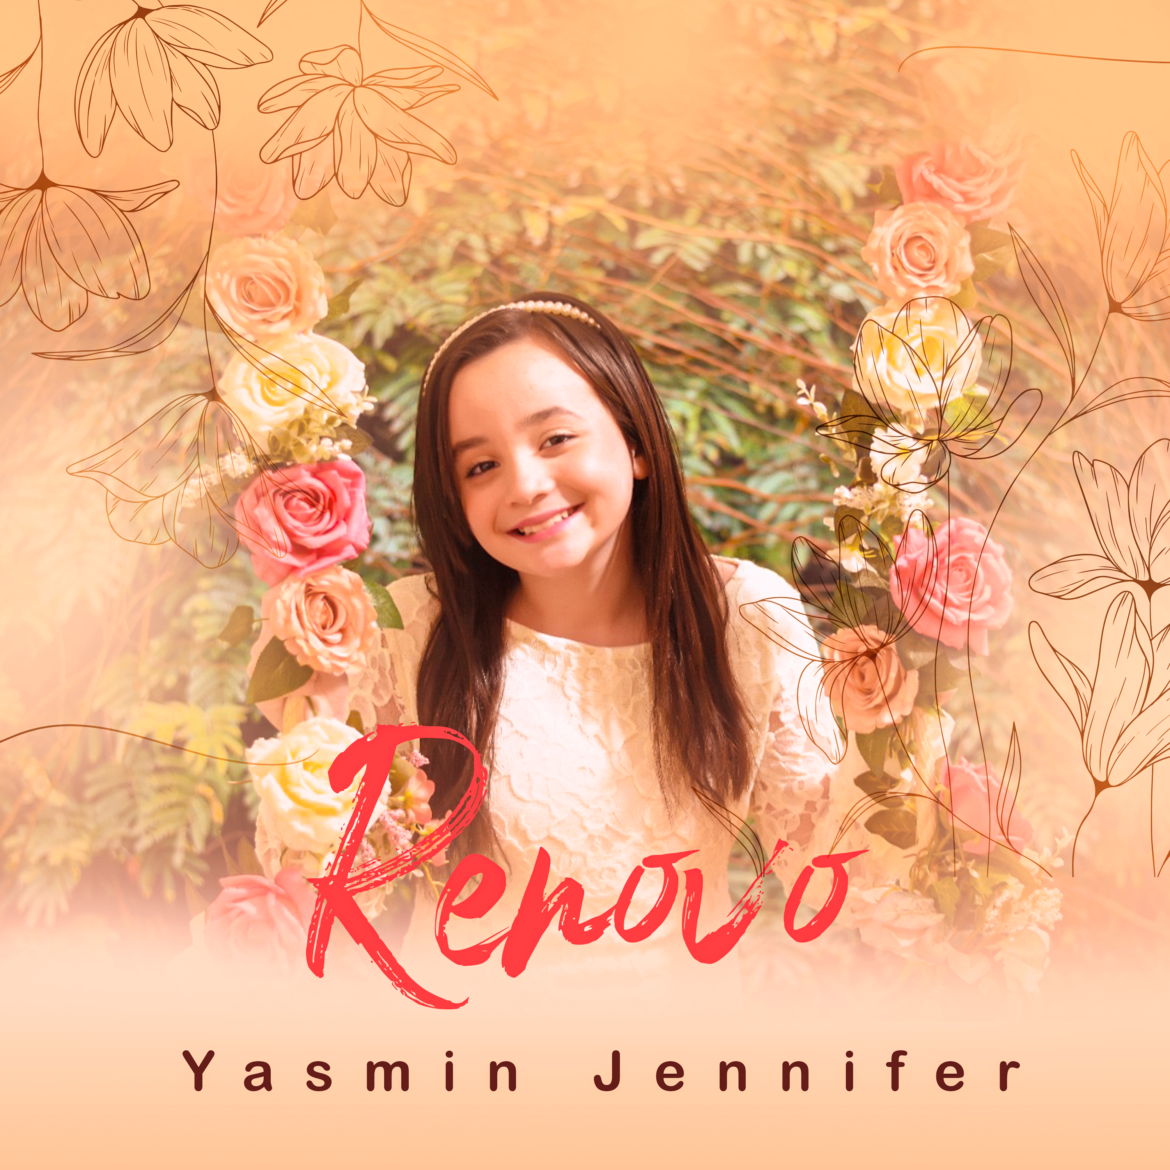 Yasmin Jennifer lança o single “Renovo”, canção composta por seus pais